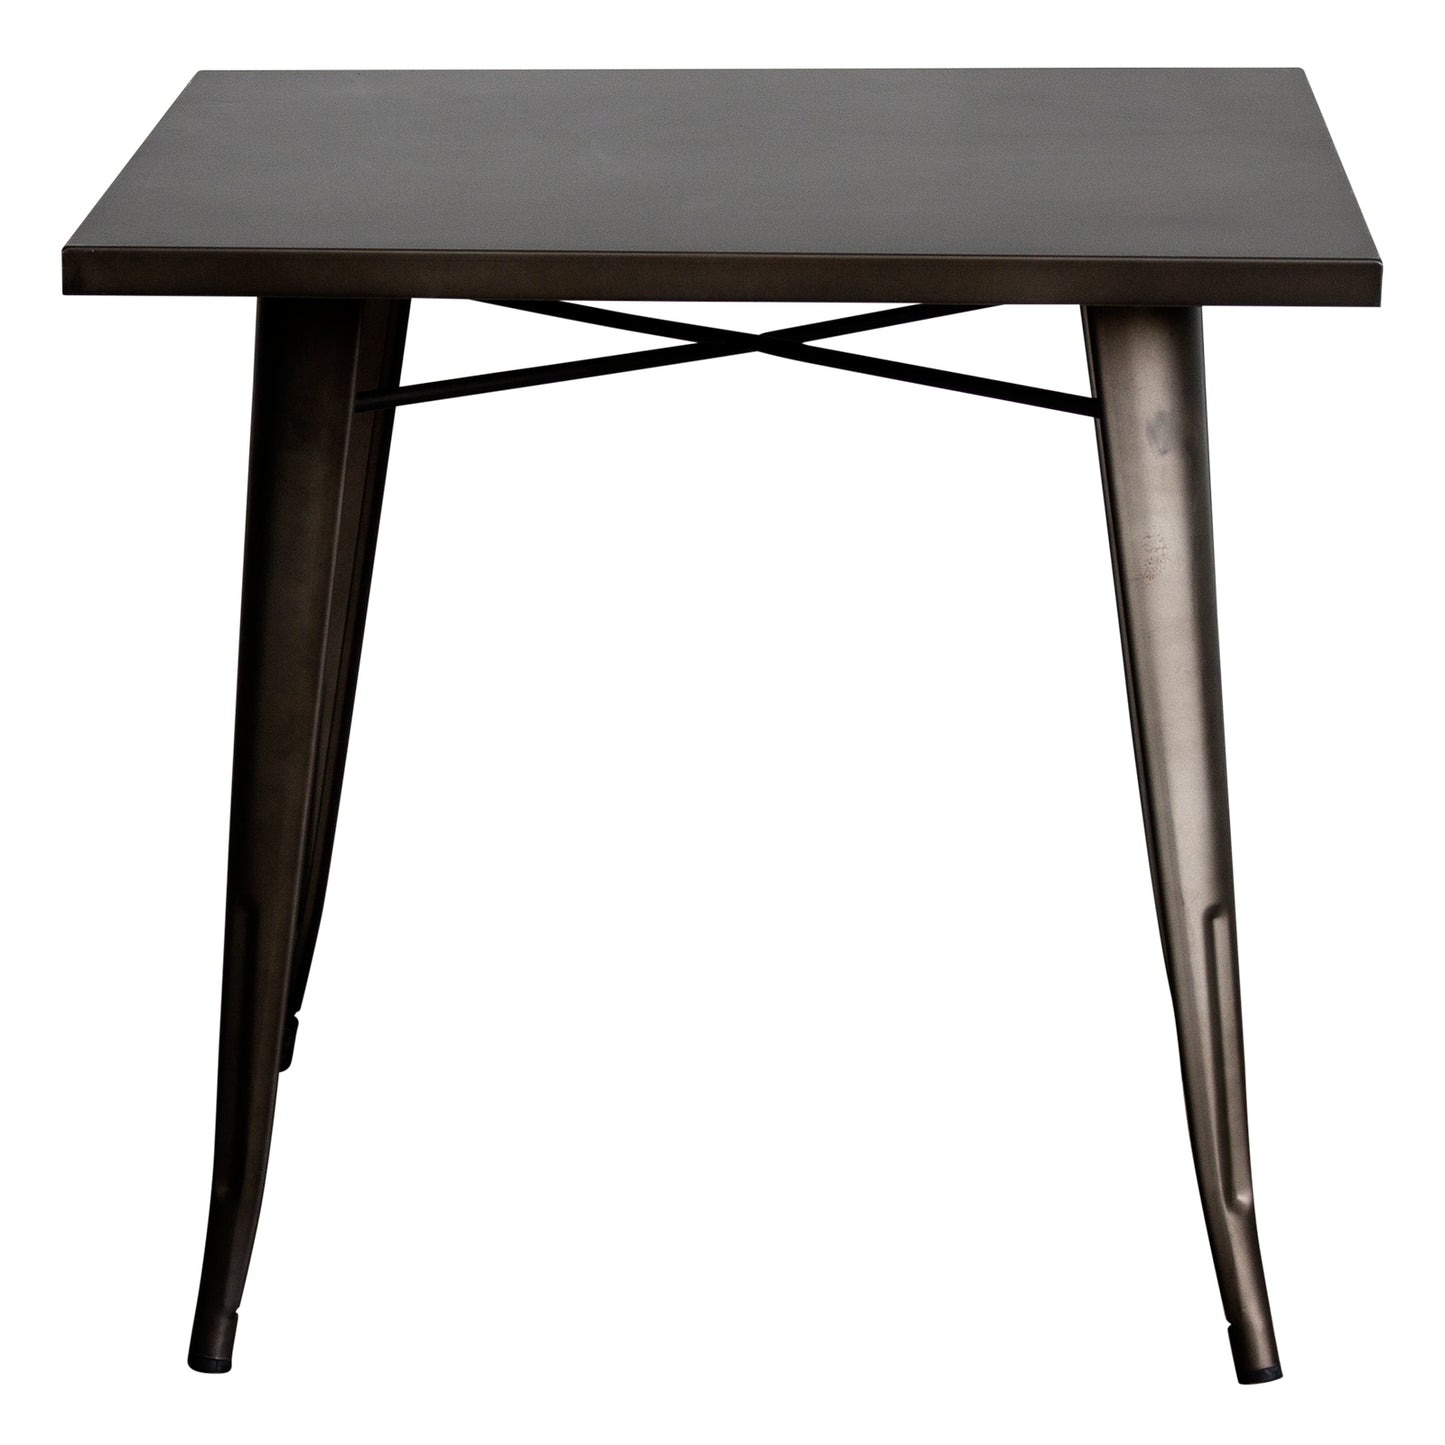 5PC Belvedere Table & Palermo Chair Set - Gun Metal Grey